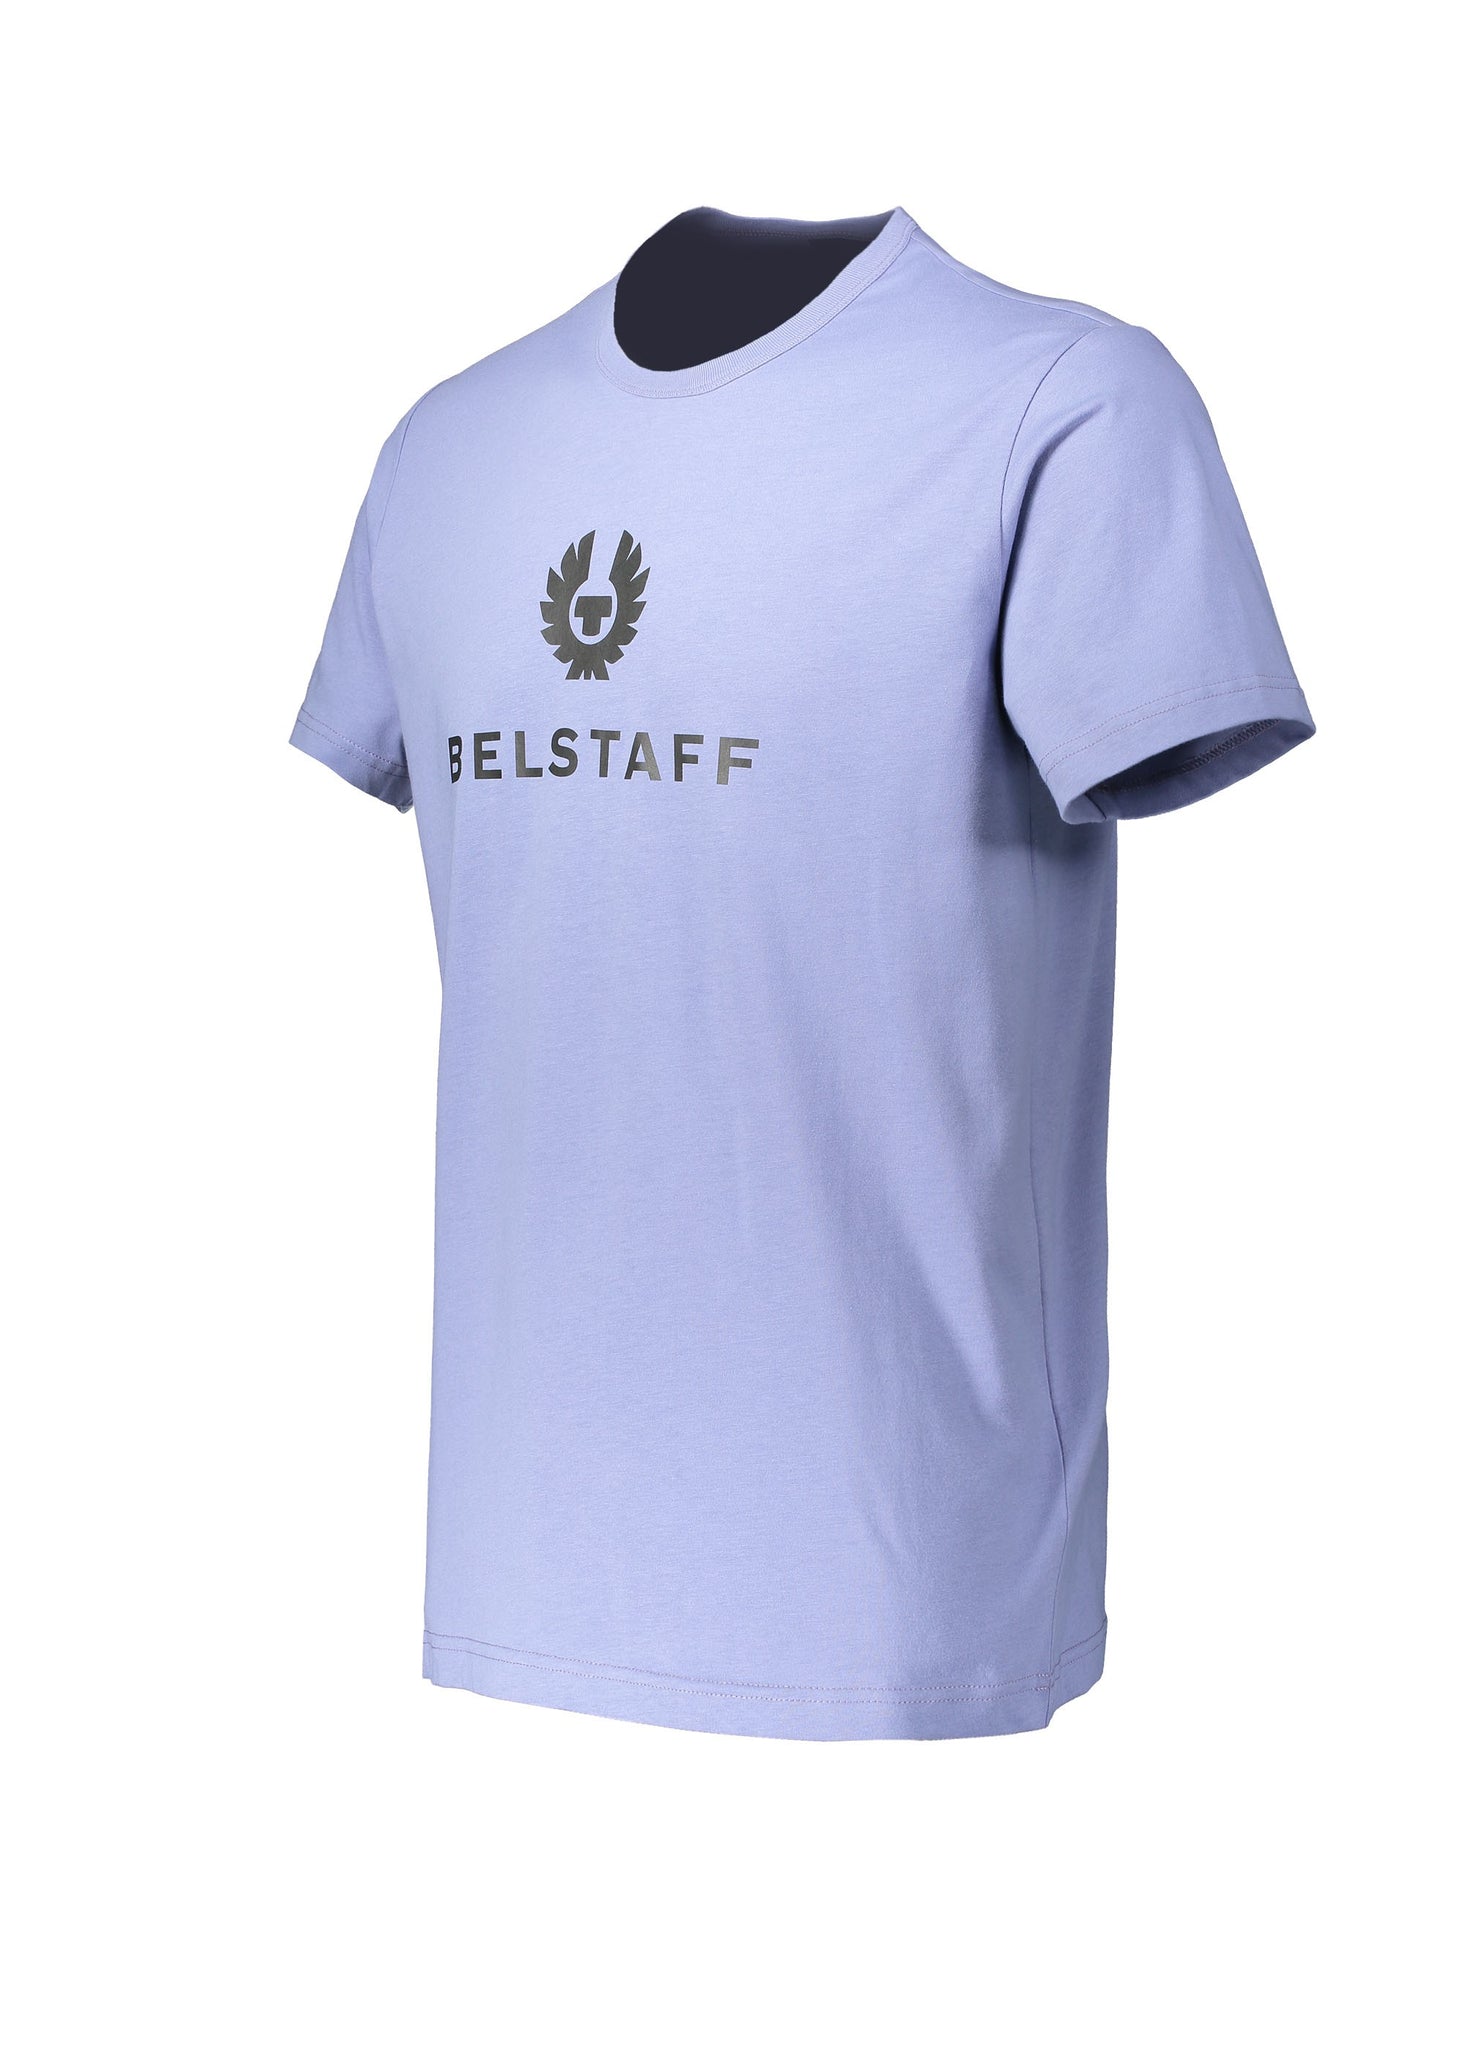 Belstaff Signature T-Shirt - Mauve